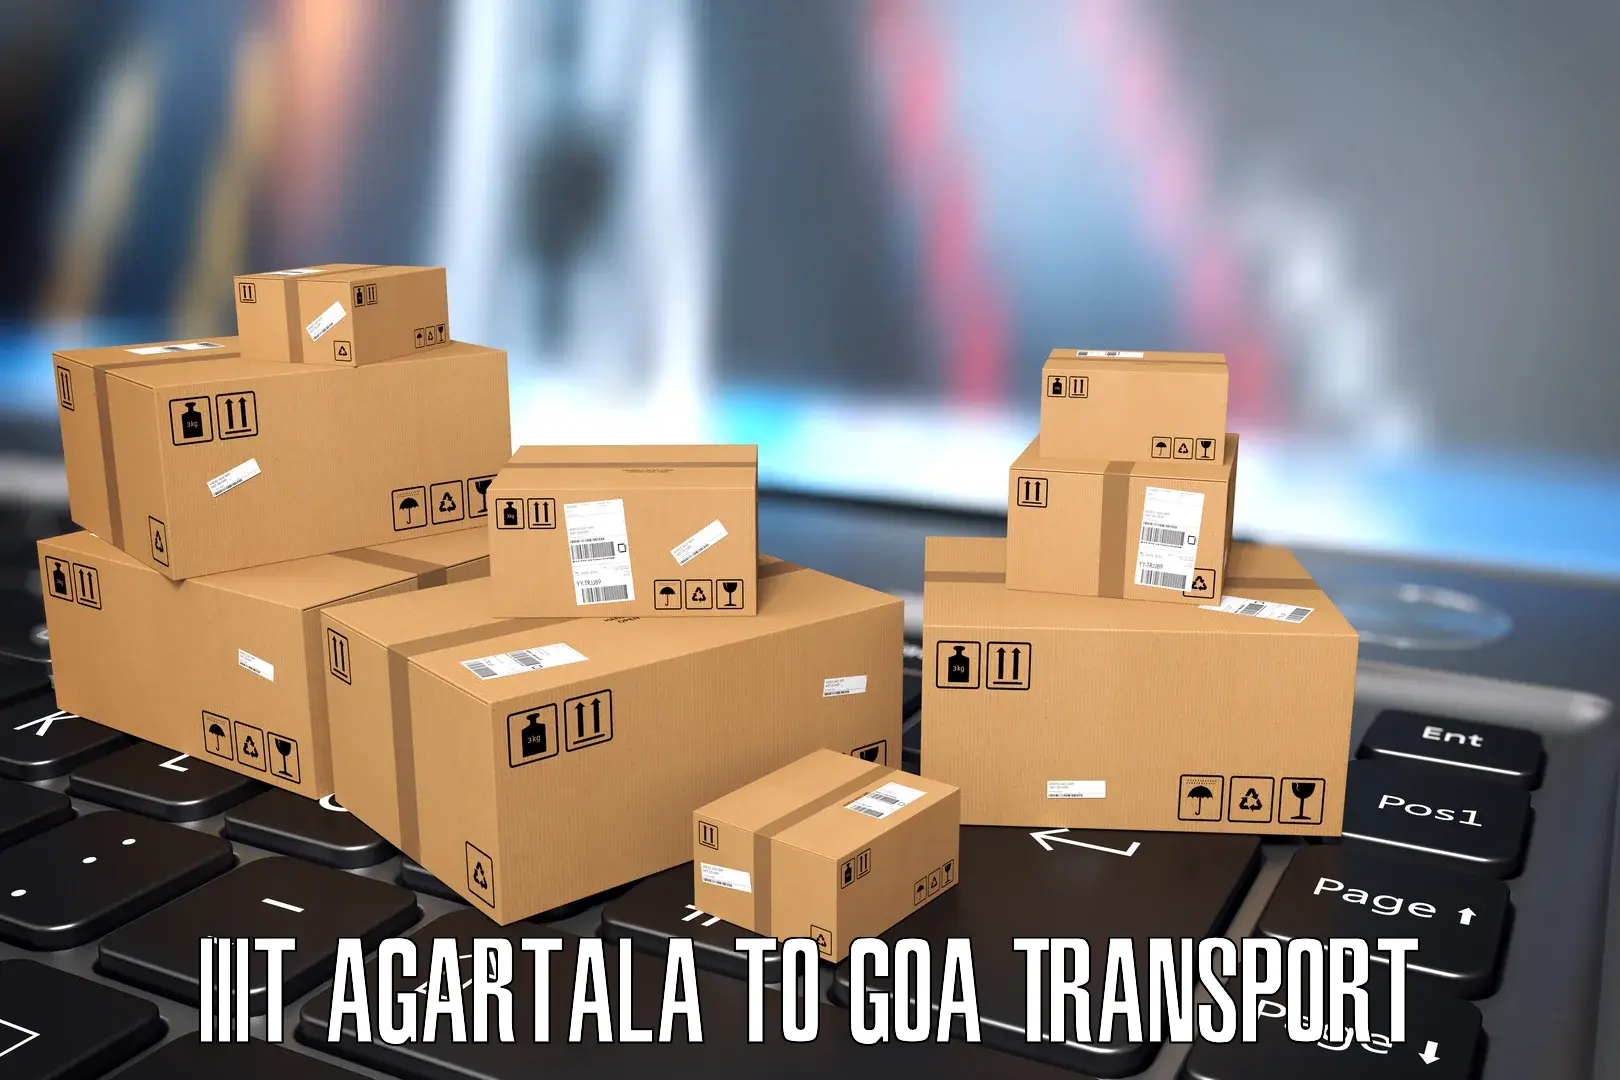 Nearby transport service IIIT Agartala to Goa